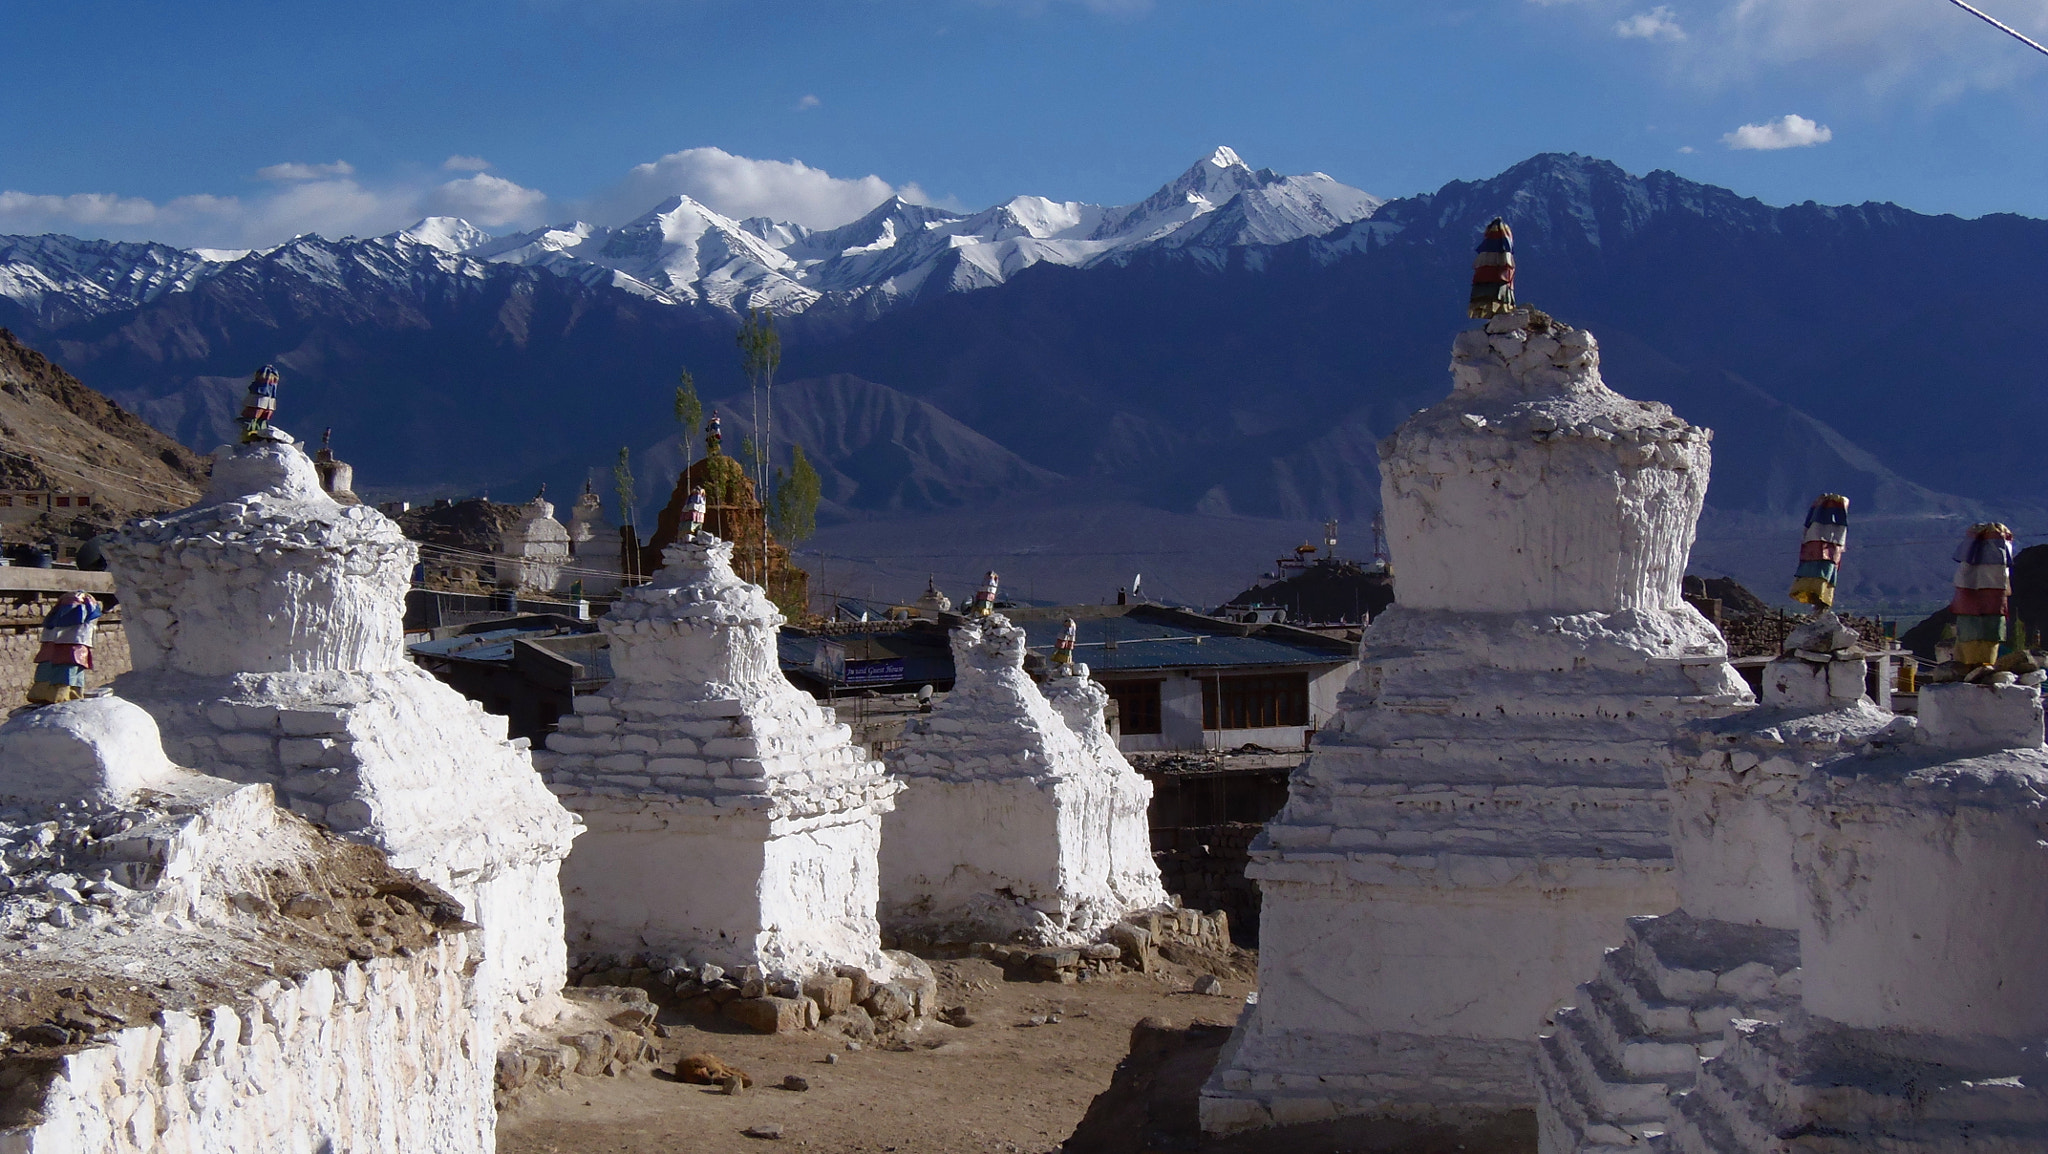 The spectacular Himalayas of Ladakh, India